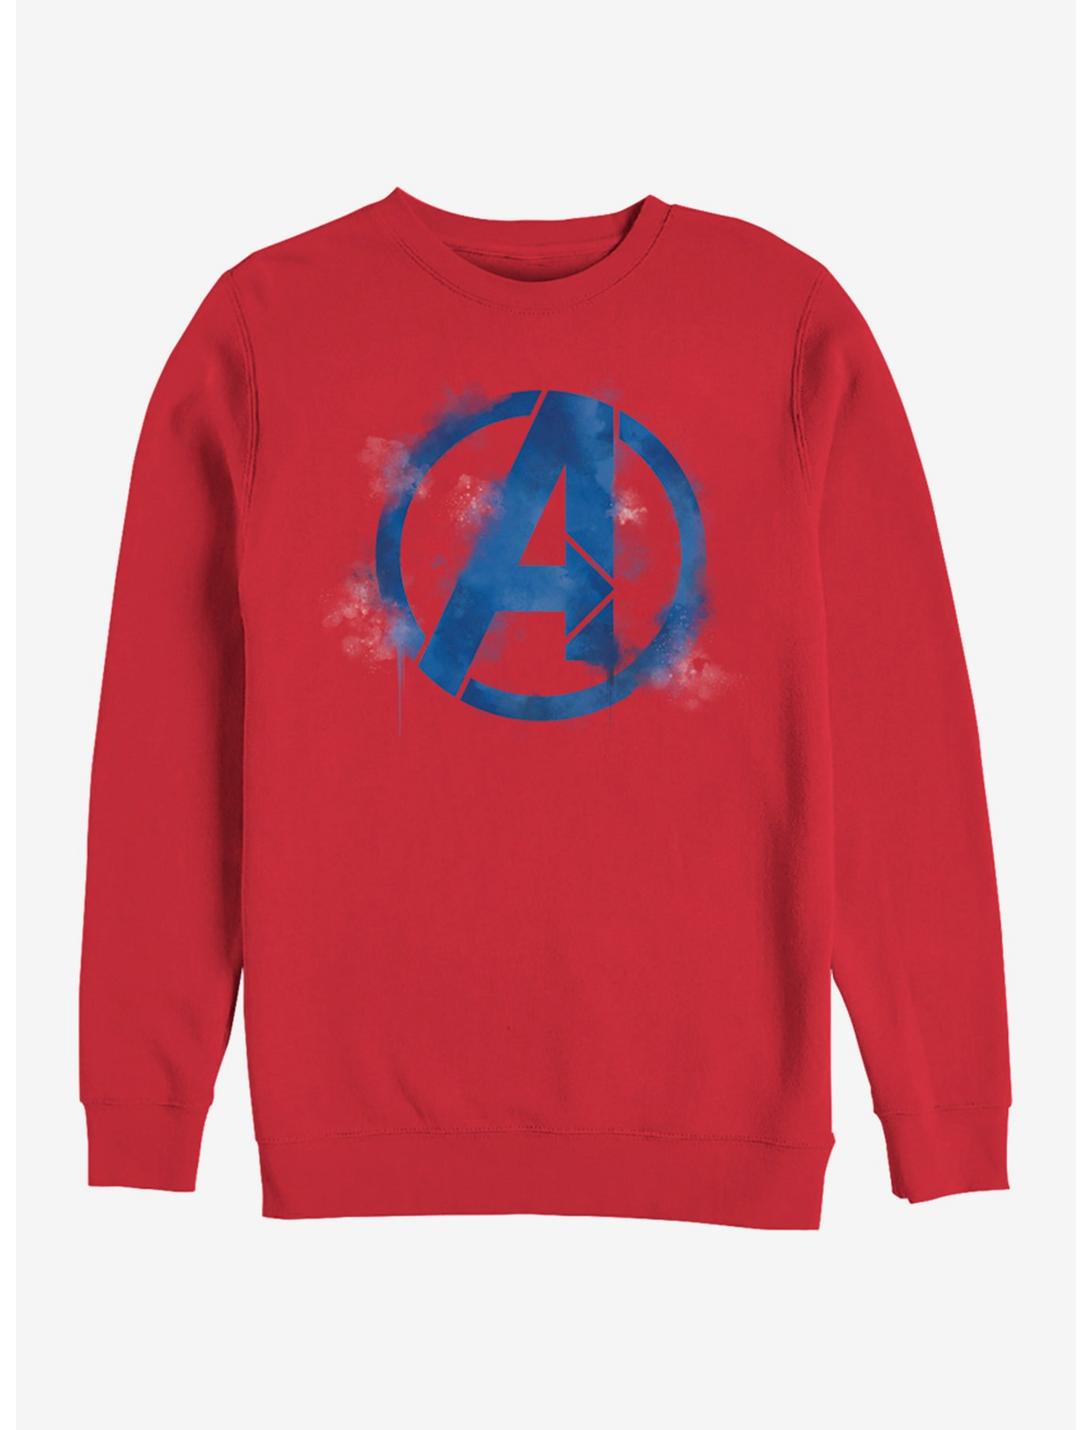 Marvel Avengers: Endgame Avengers Spray Logo Red Sweatshirt, RED, hi-res